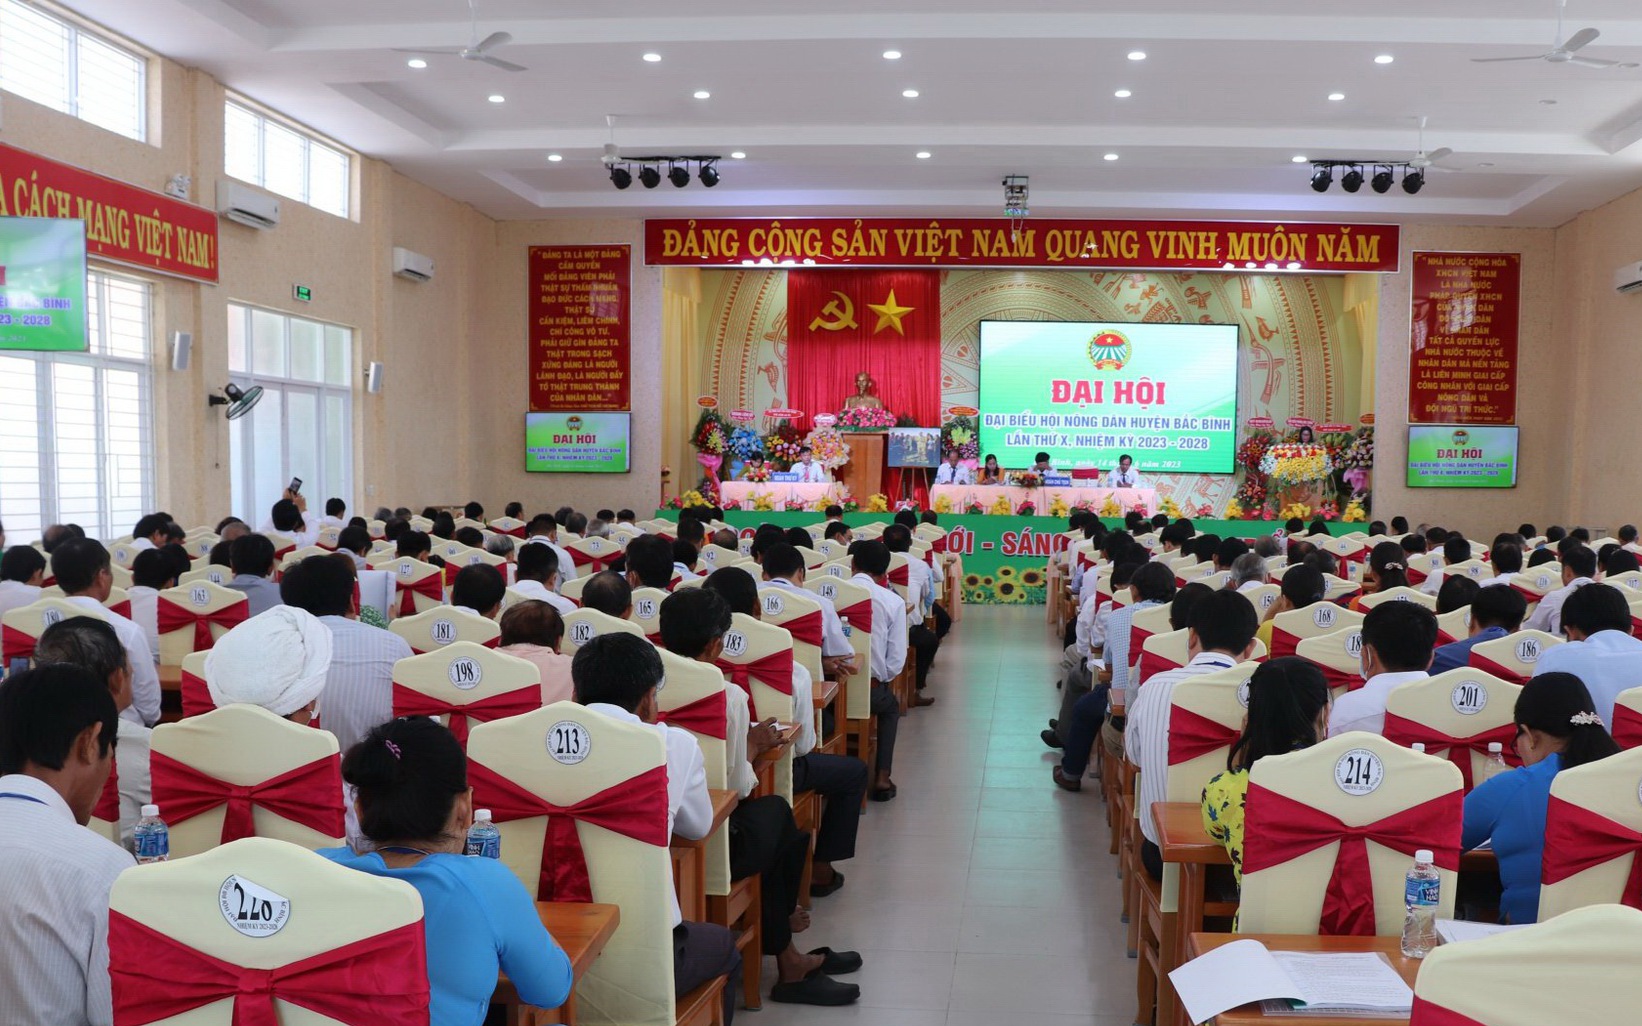 Ông Nguyễn Hữu Liêm được bầu tái cử chức Chủ tịch Hội Nông dân huyện Bắc Bình